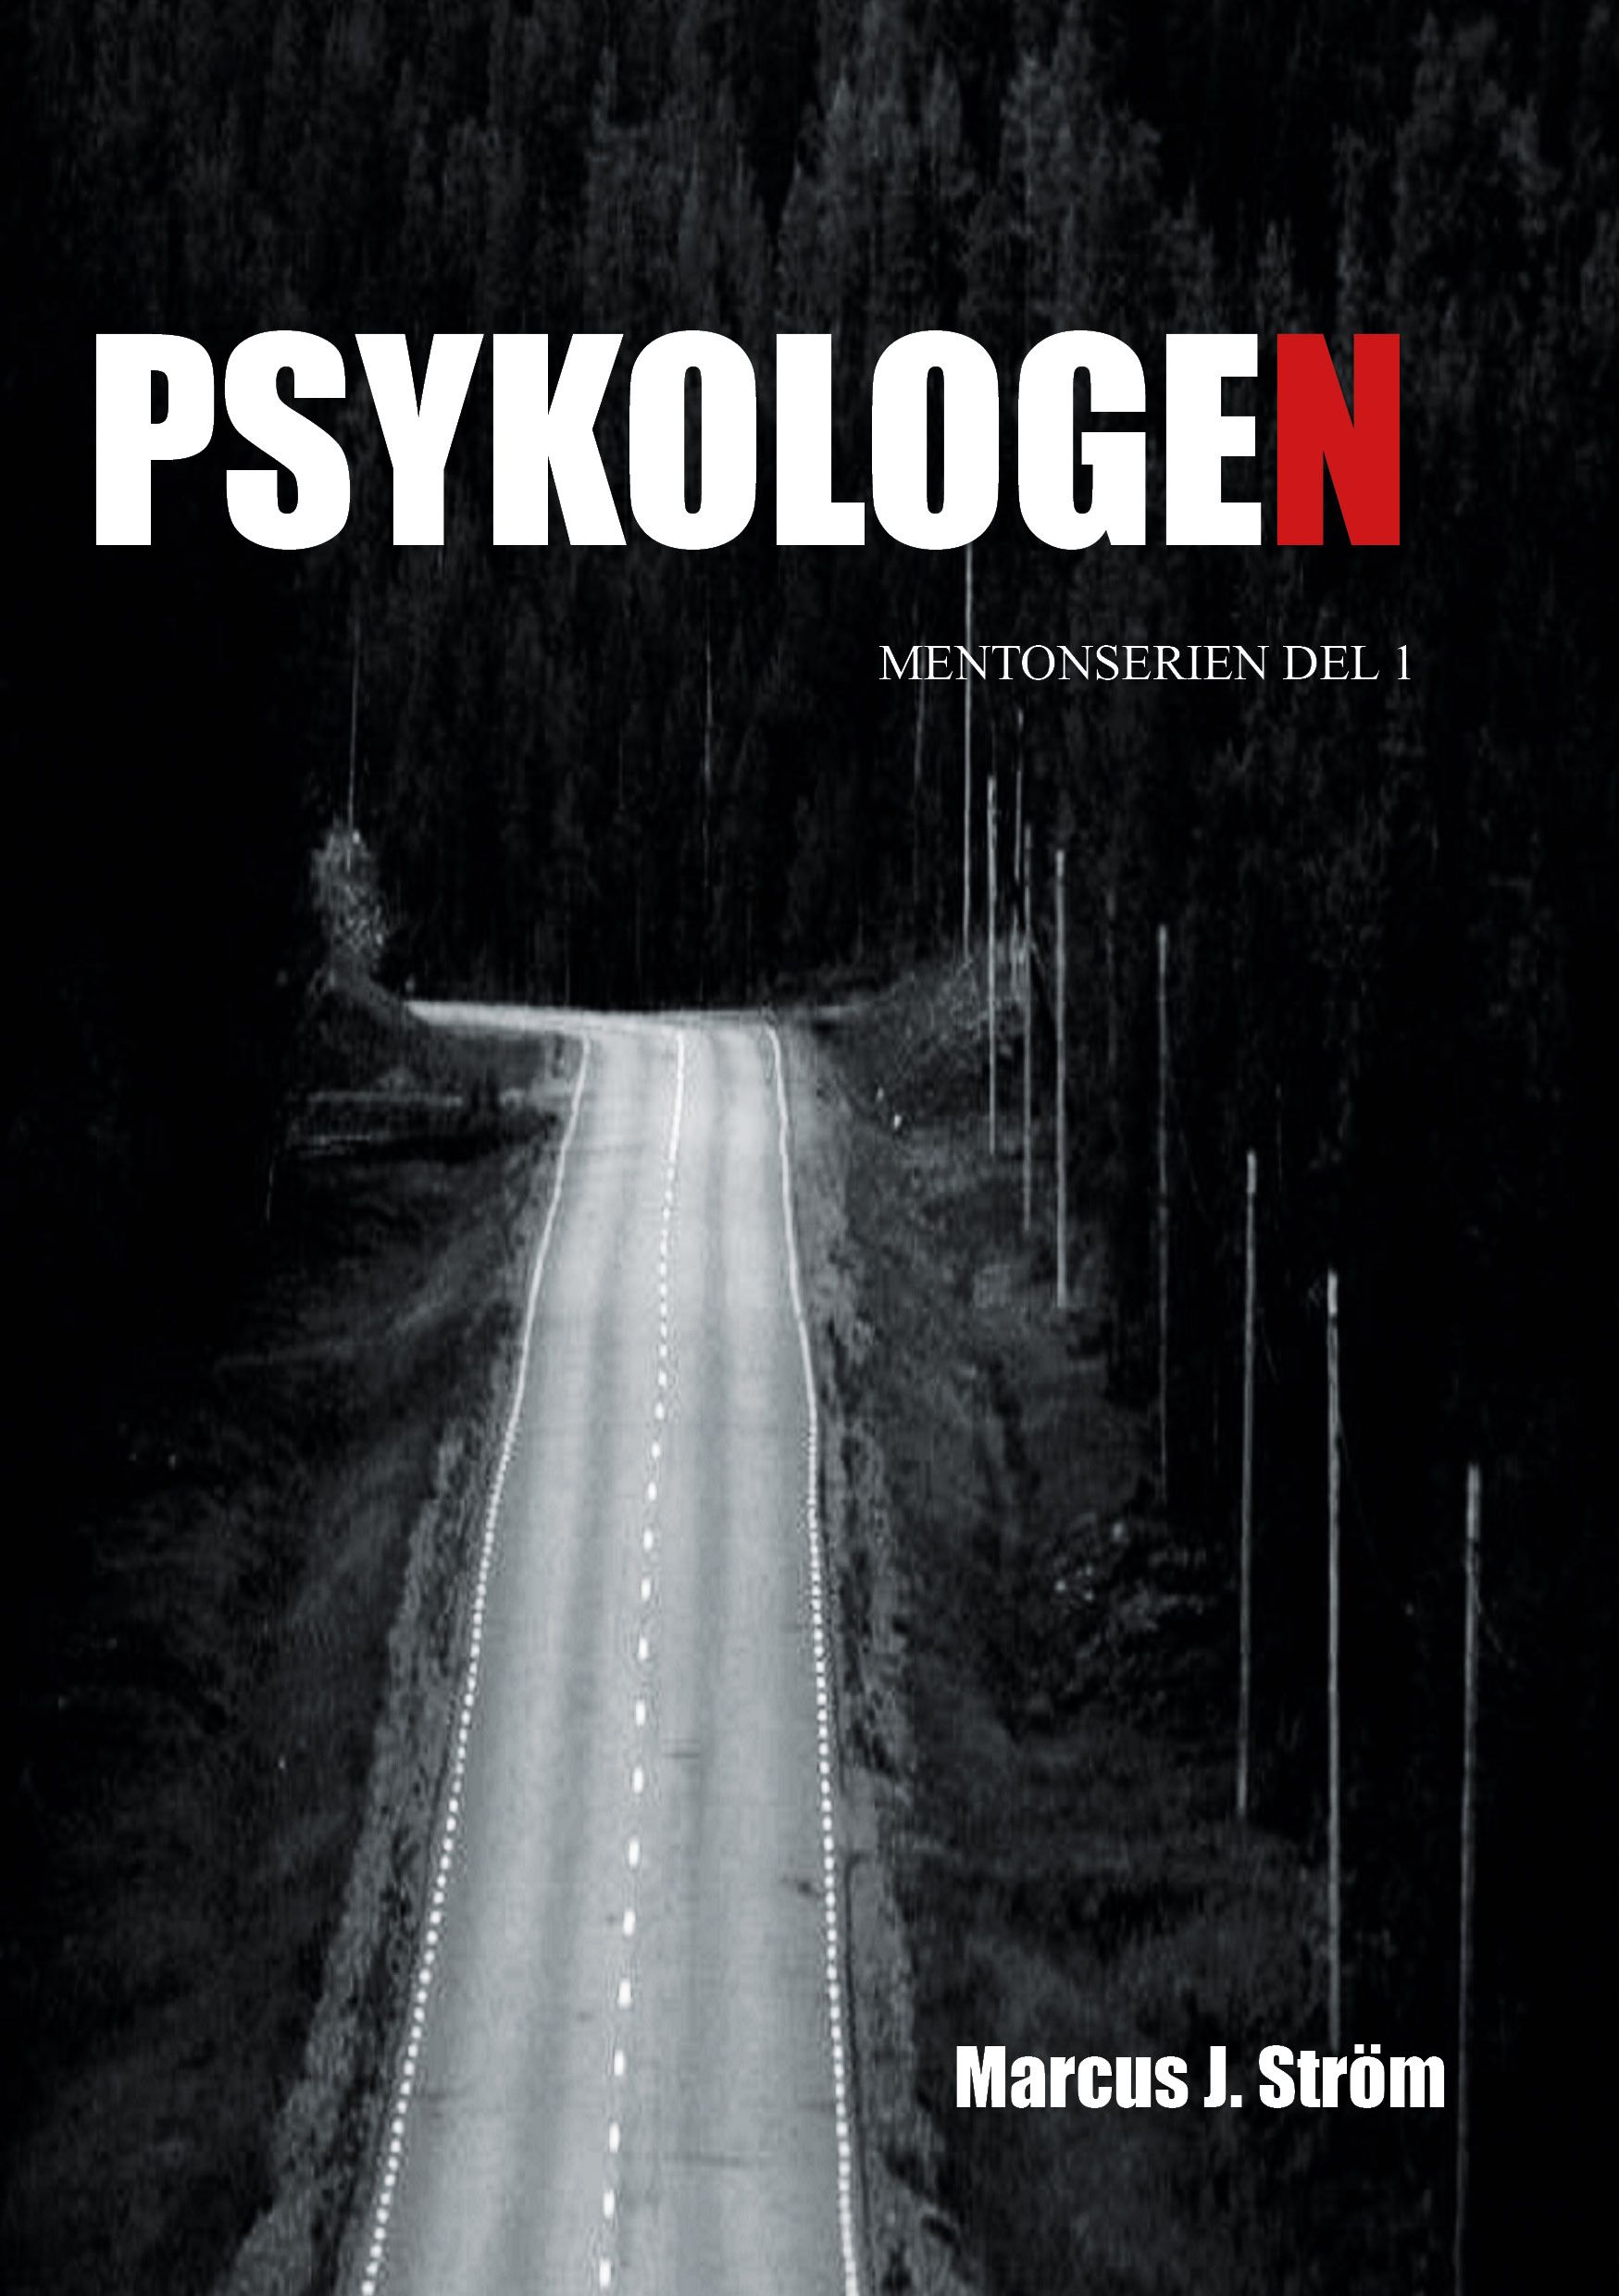 Psykologen, e-bok av Marcus J. Ström